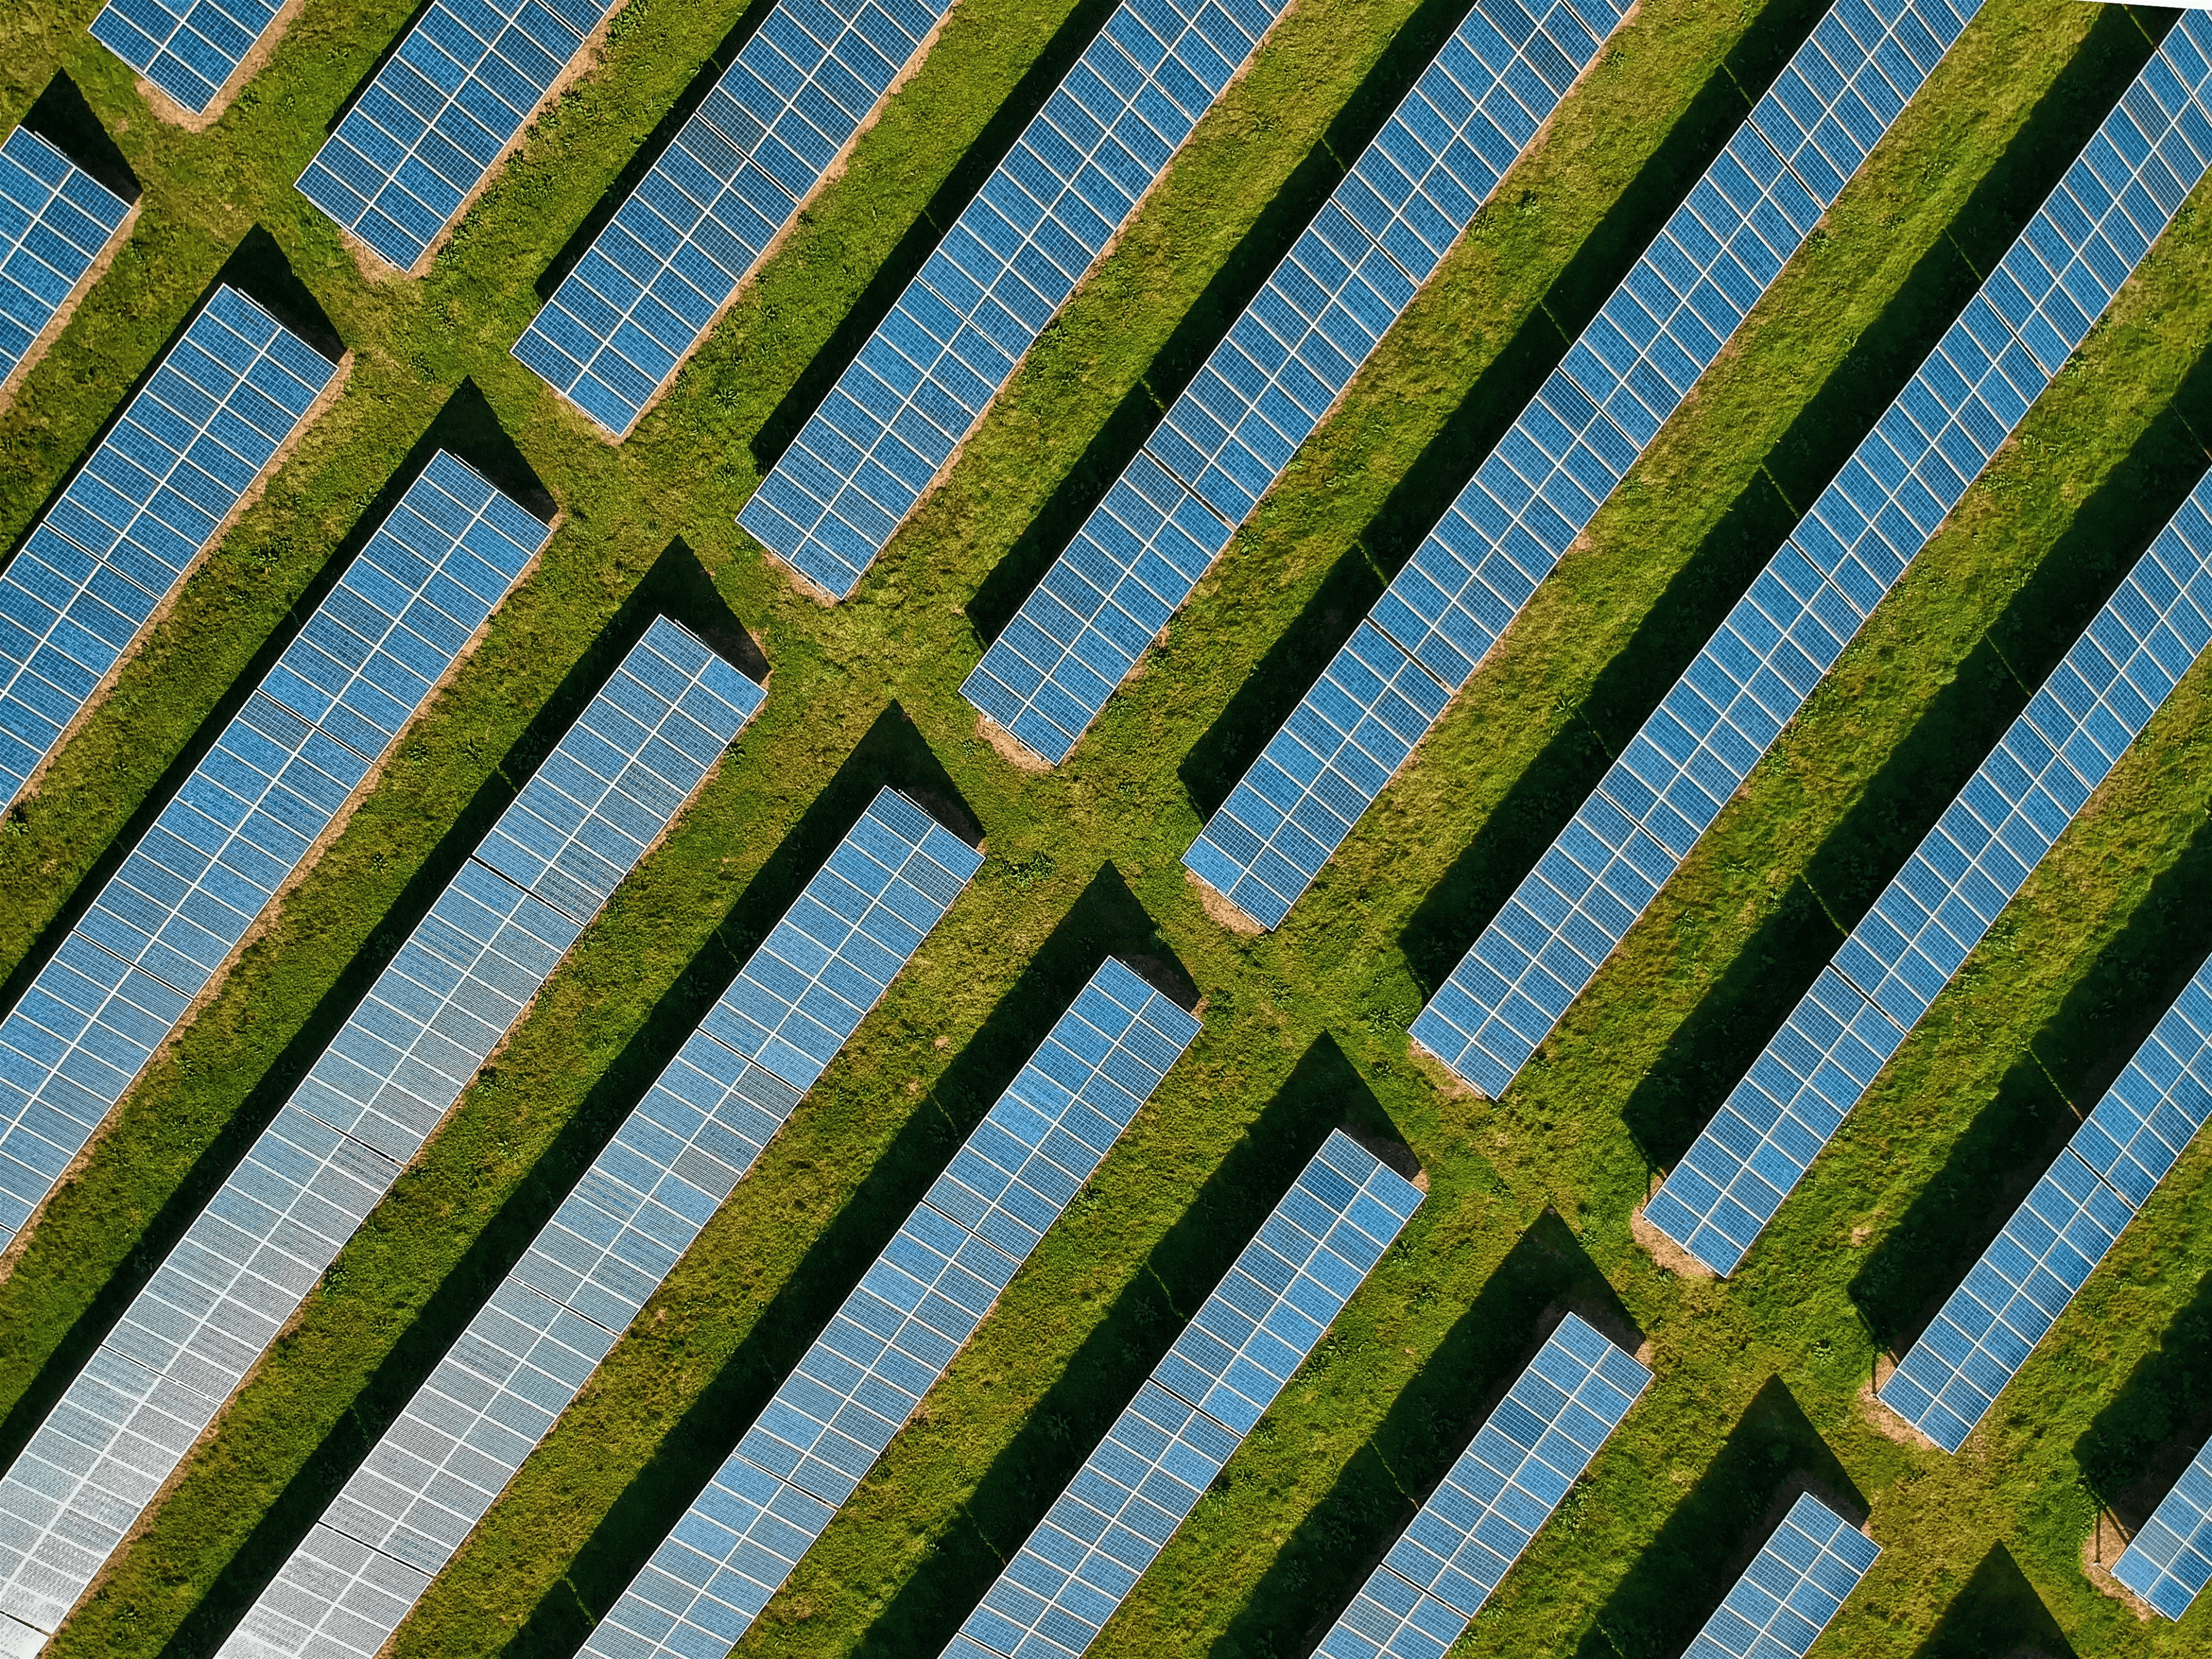 Solar panels in field